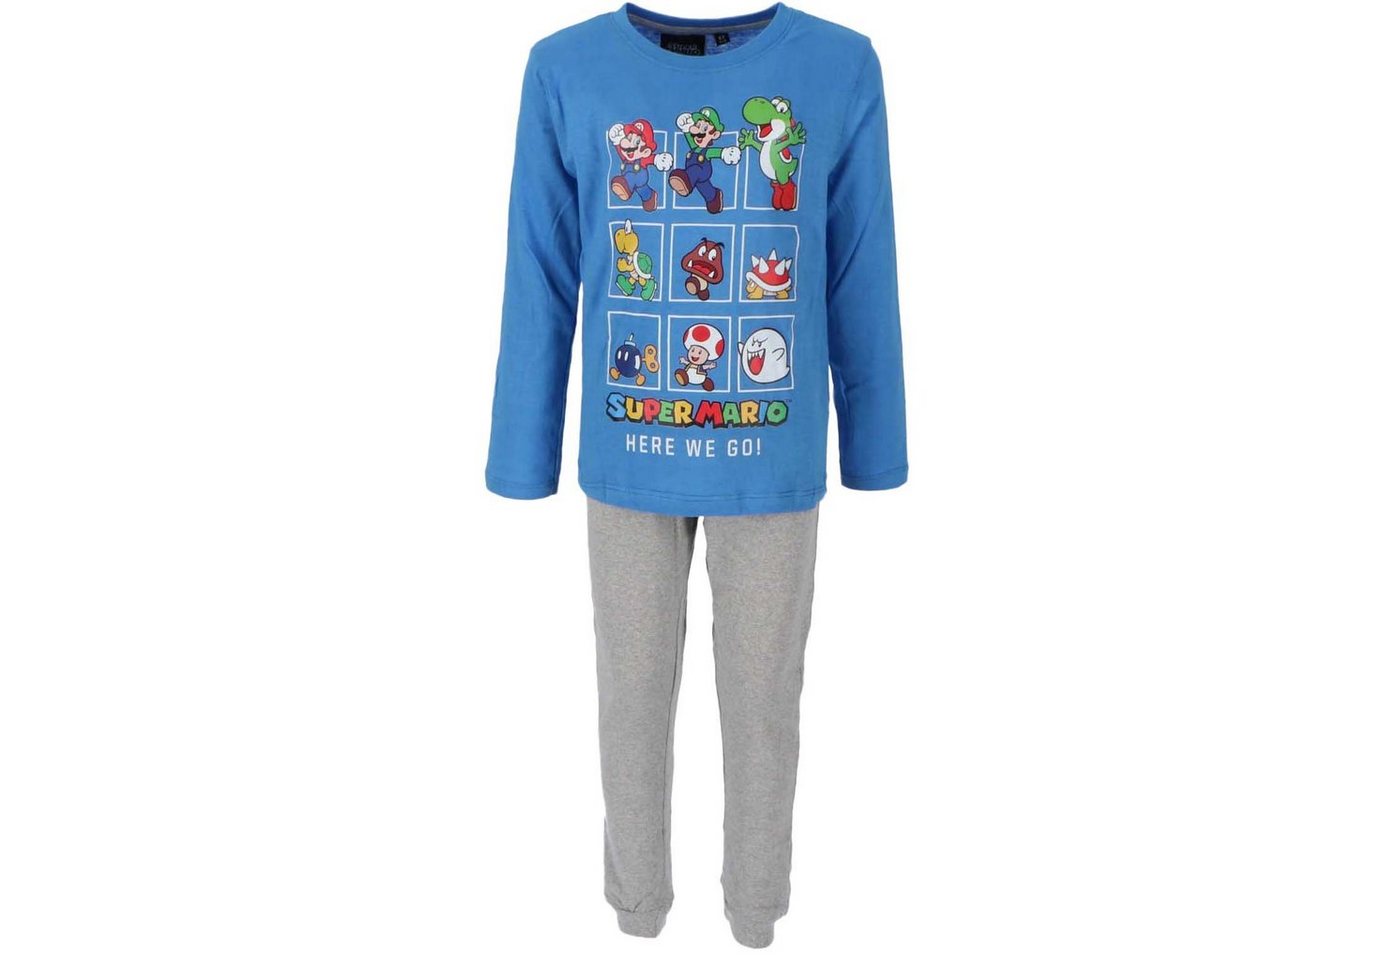 Super Mario Schlafanzug SUPER MARIO Pyjama Kinder Schlafanzug Jungen und Mädchen Lange Hose + Longsleeve Blau/Grau Gr.98 104 110 116 122 128 von Super Mario